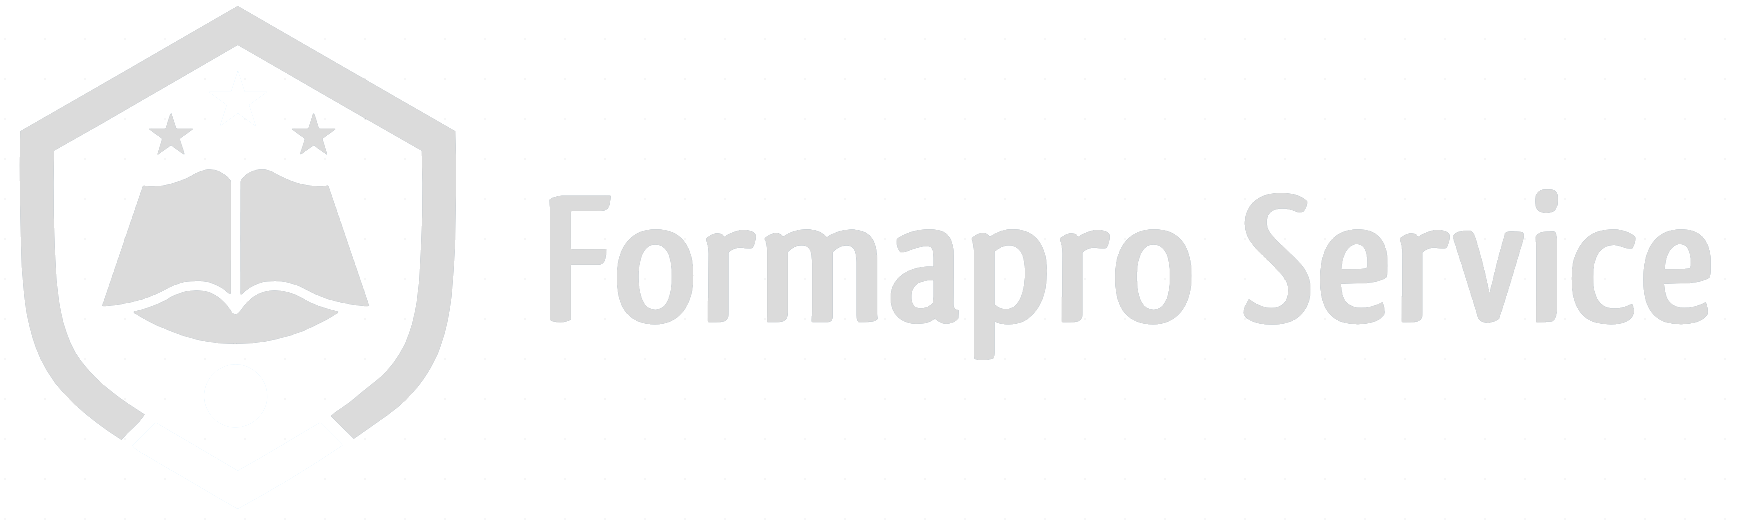 FormaPro Service